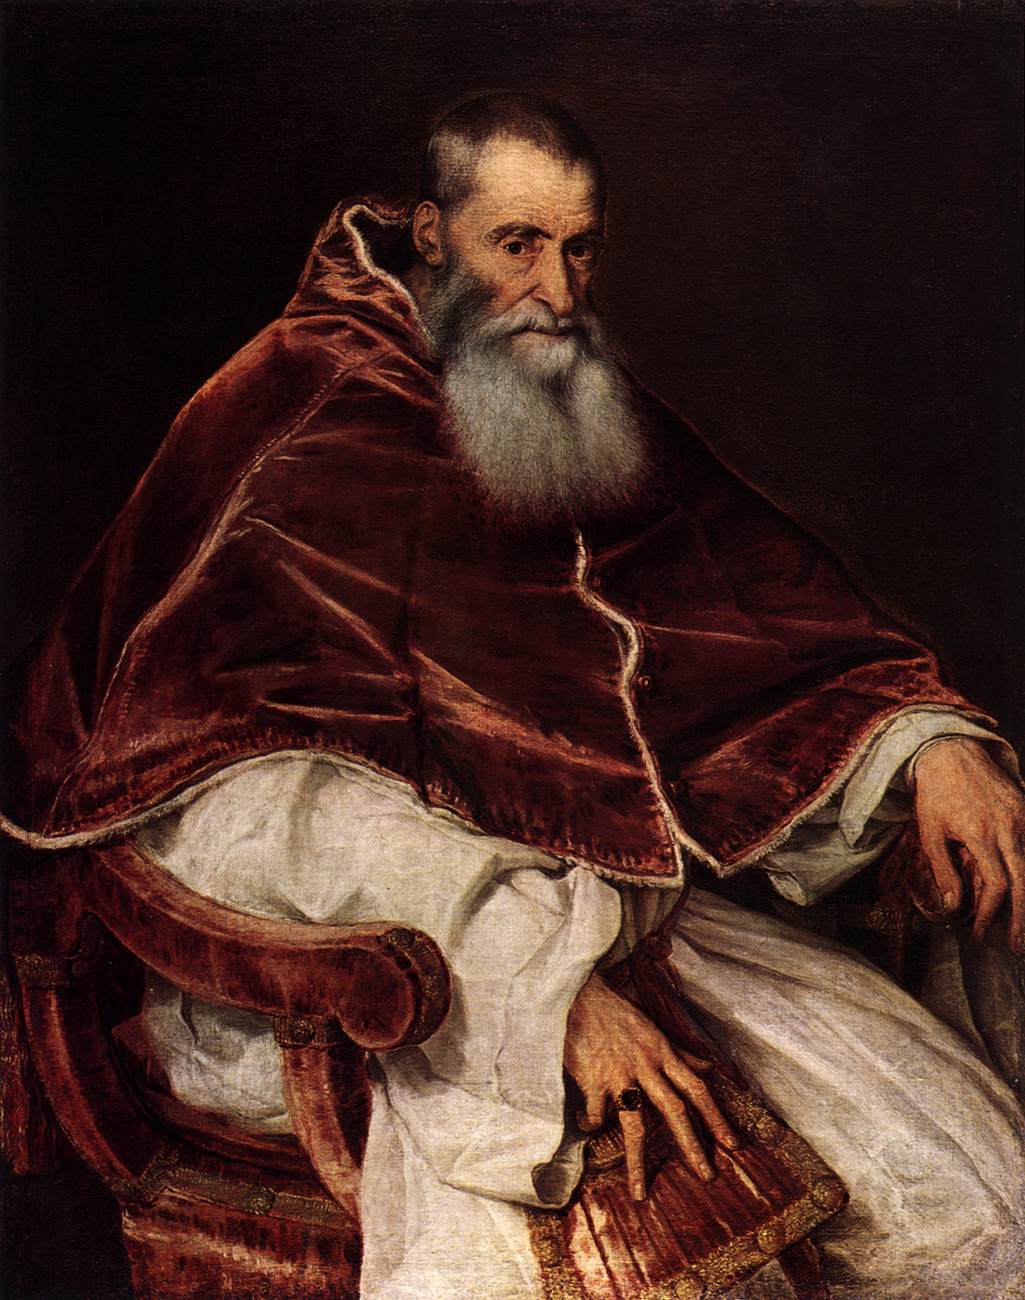 Pope Paul III by Titian